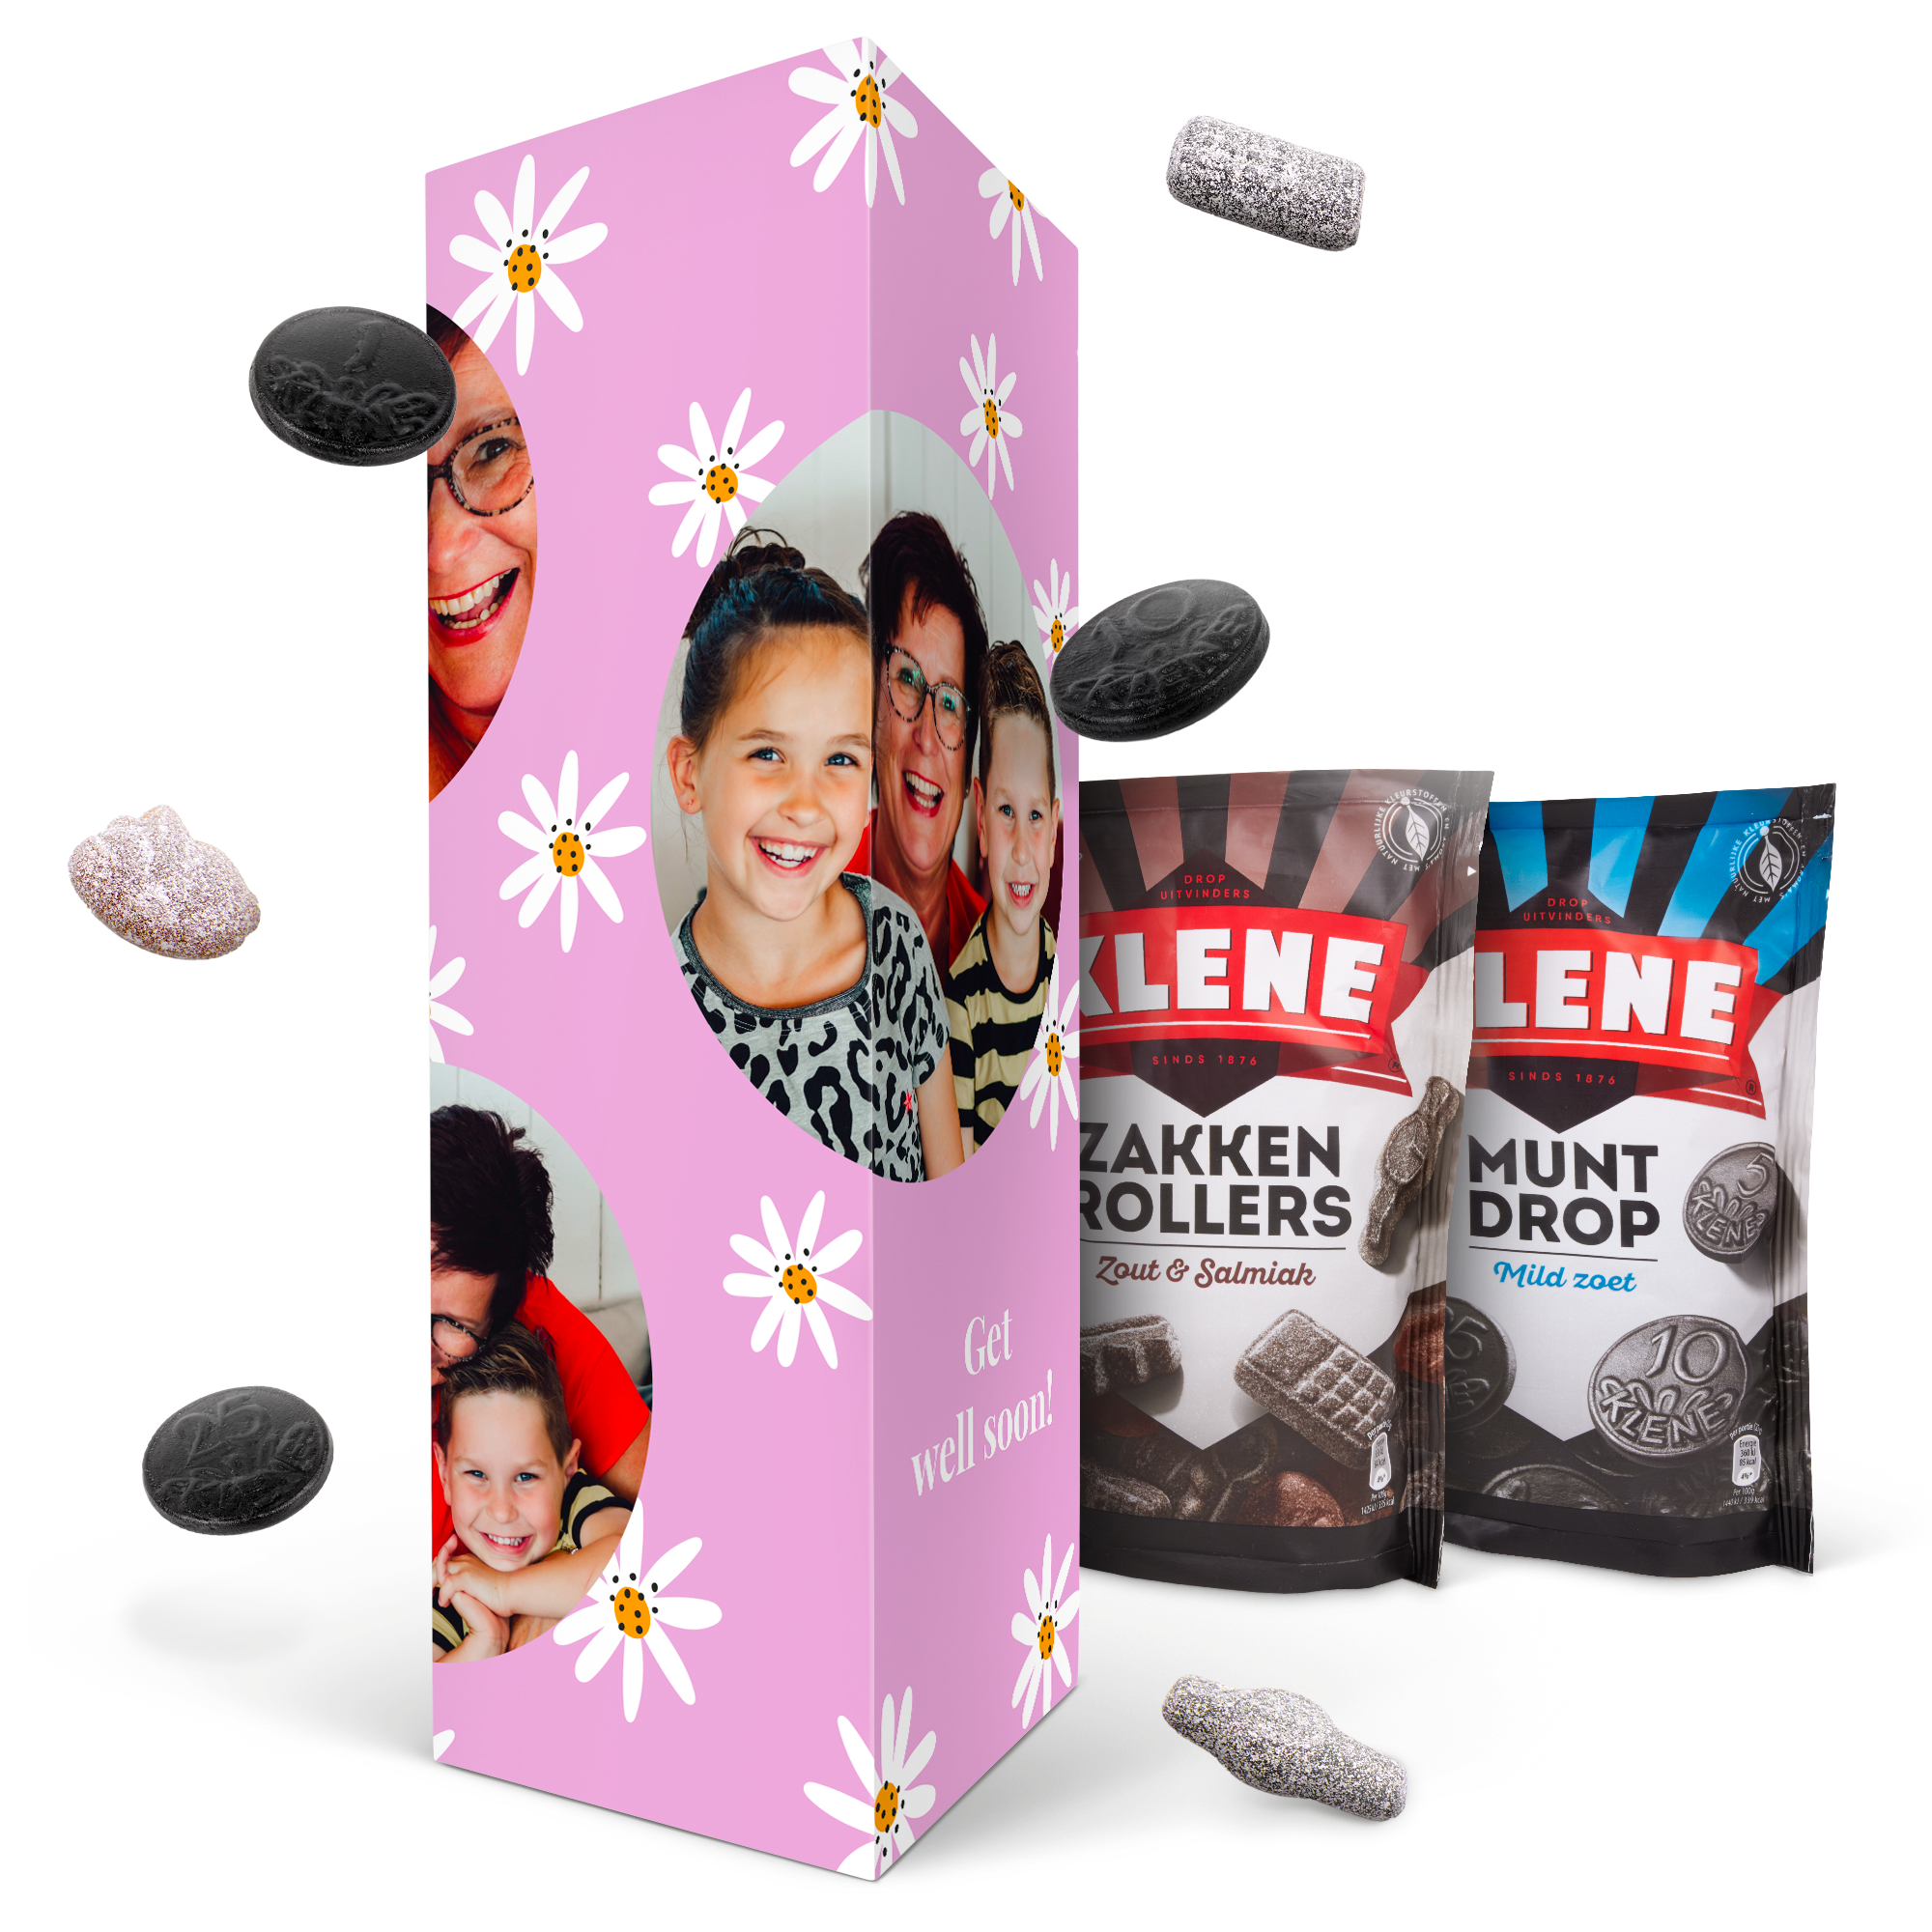 Personalised gift box - Klene Liquorice